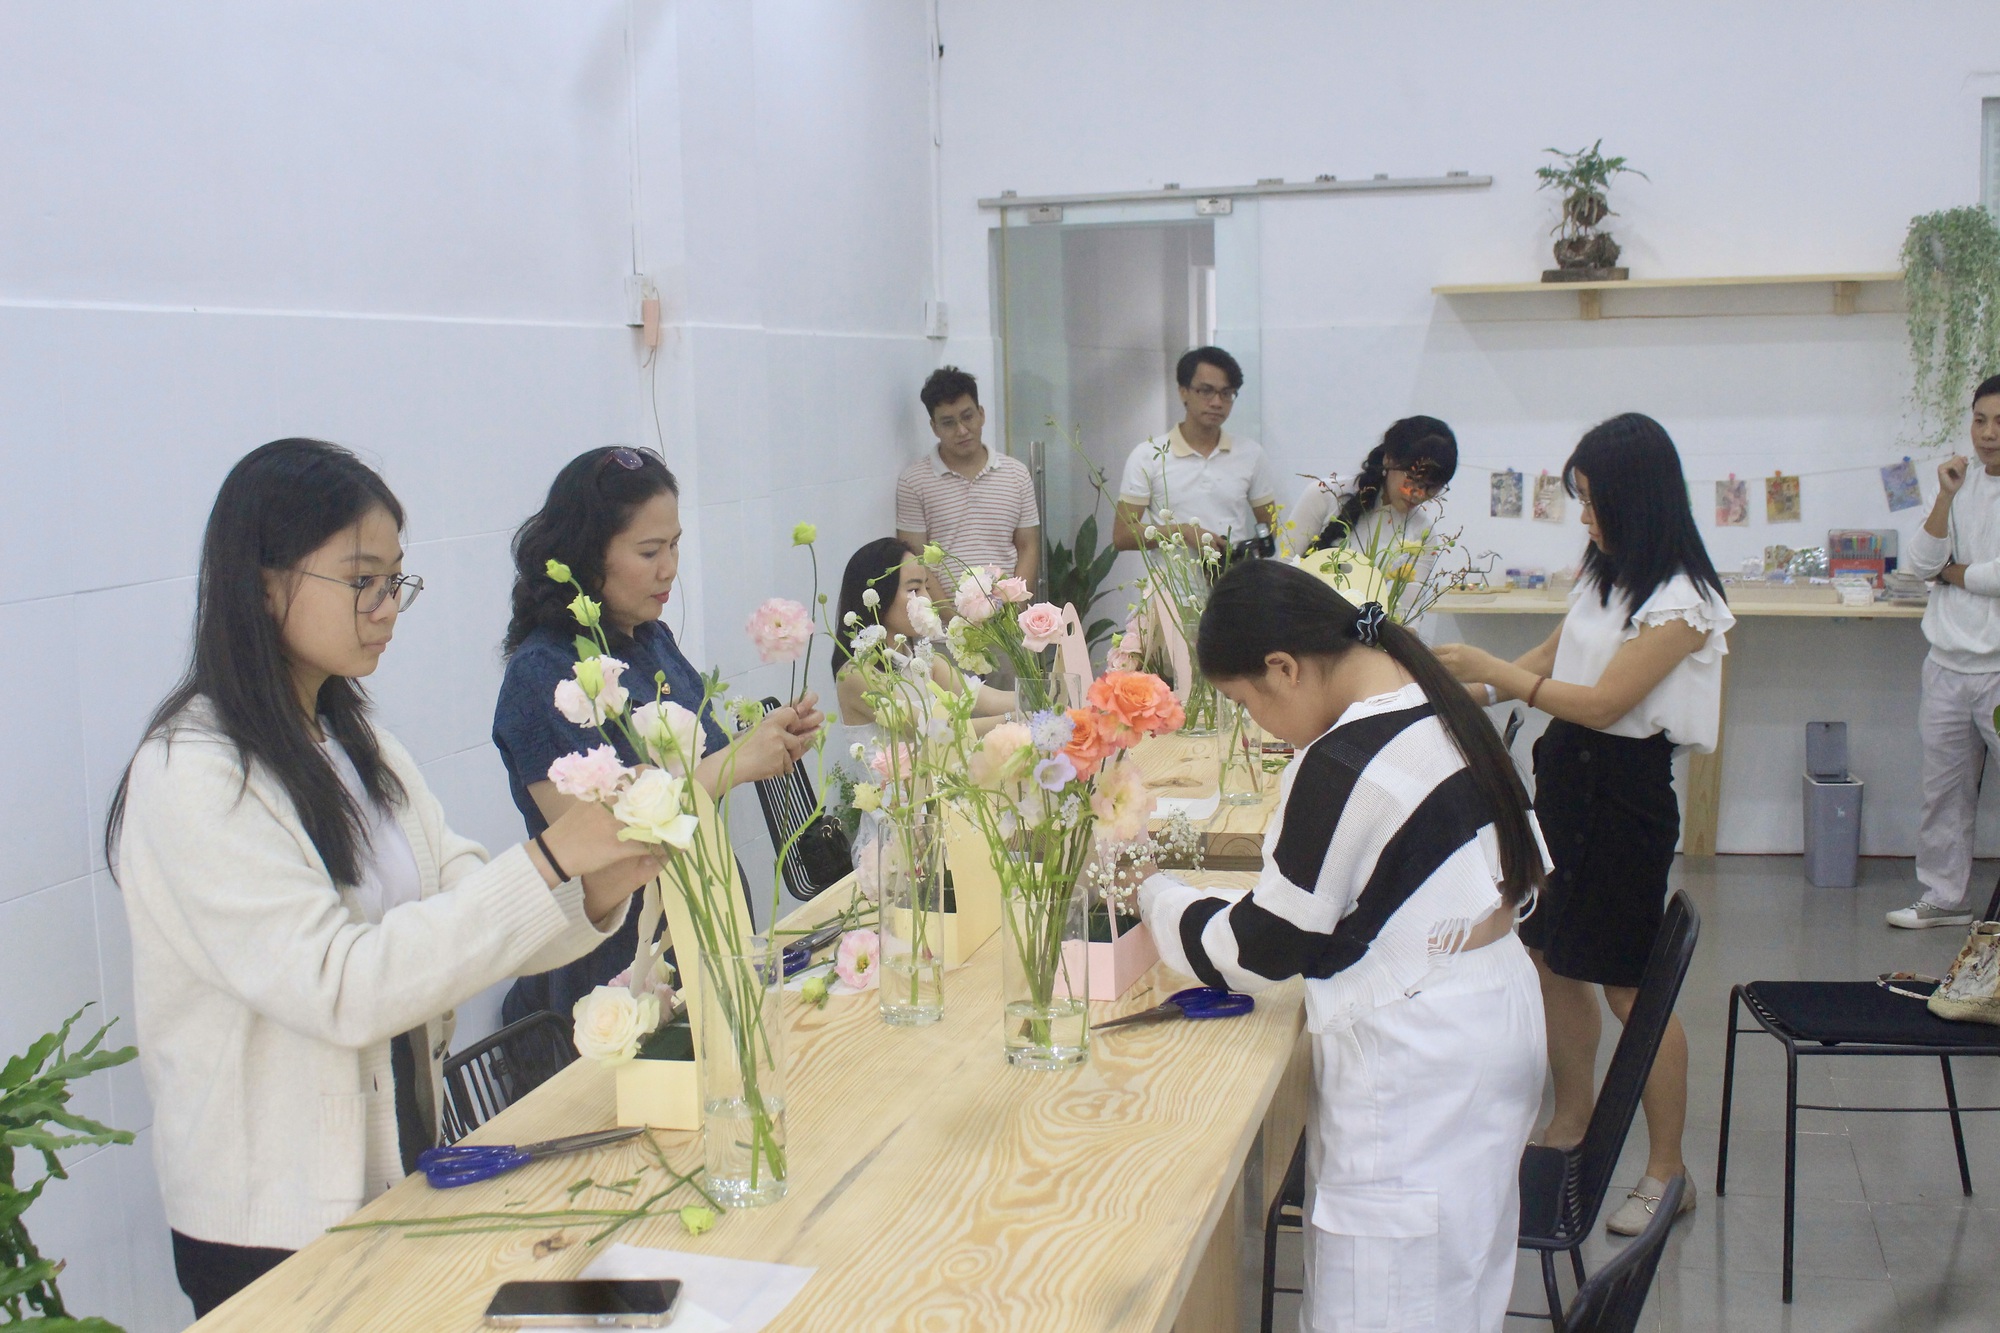 Workshop chữa lành không người dạy, không ồn ào, chỉ có mình với hoa tại Sài Gòn - Ảnh 1.